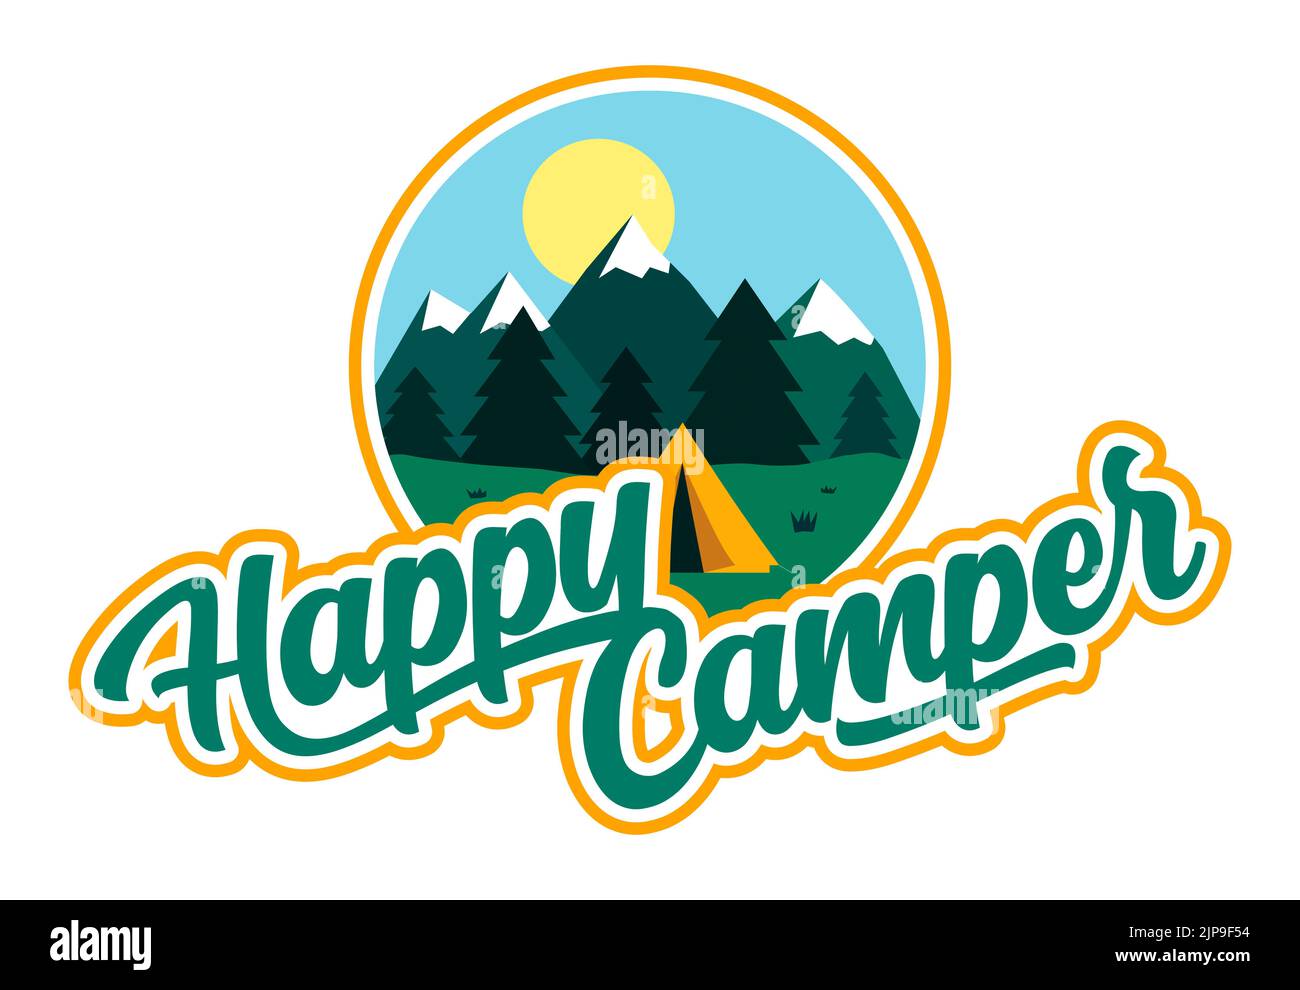 Grafische Darstellung eines Zeltes in einer ländlichen Szene mit fernen Bergen und der Beschriftung „Happy Camper“ Stockfoto